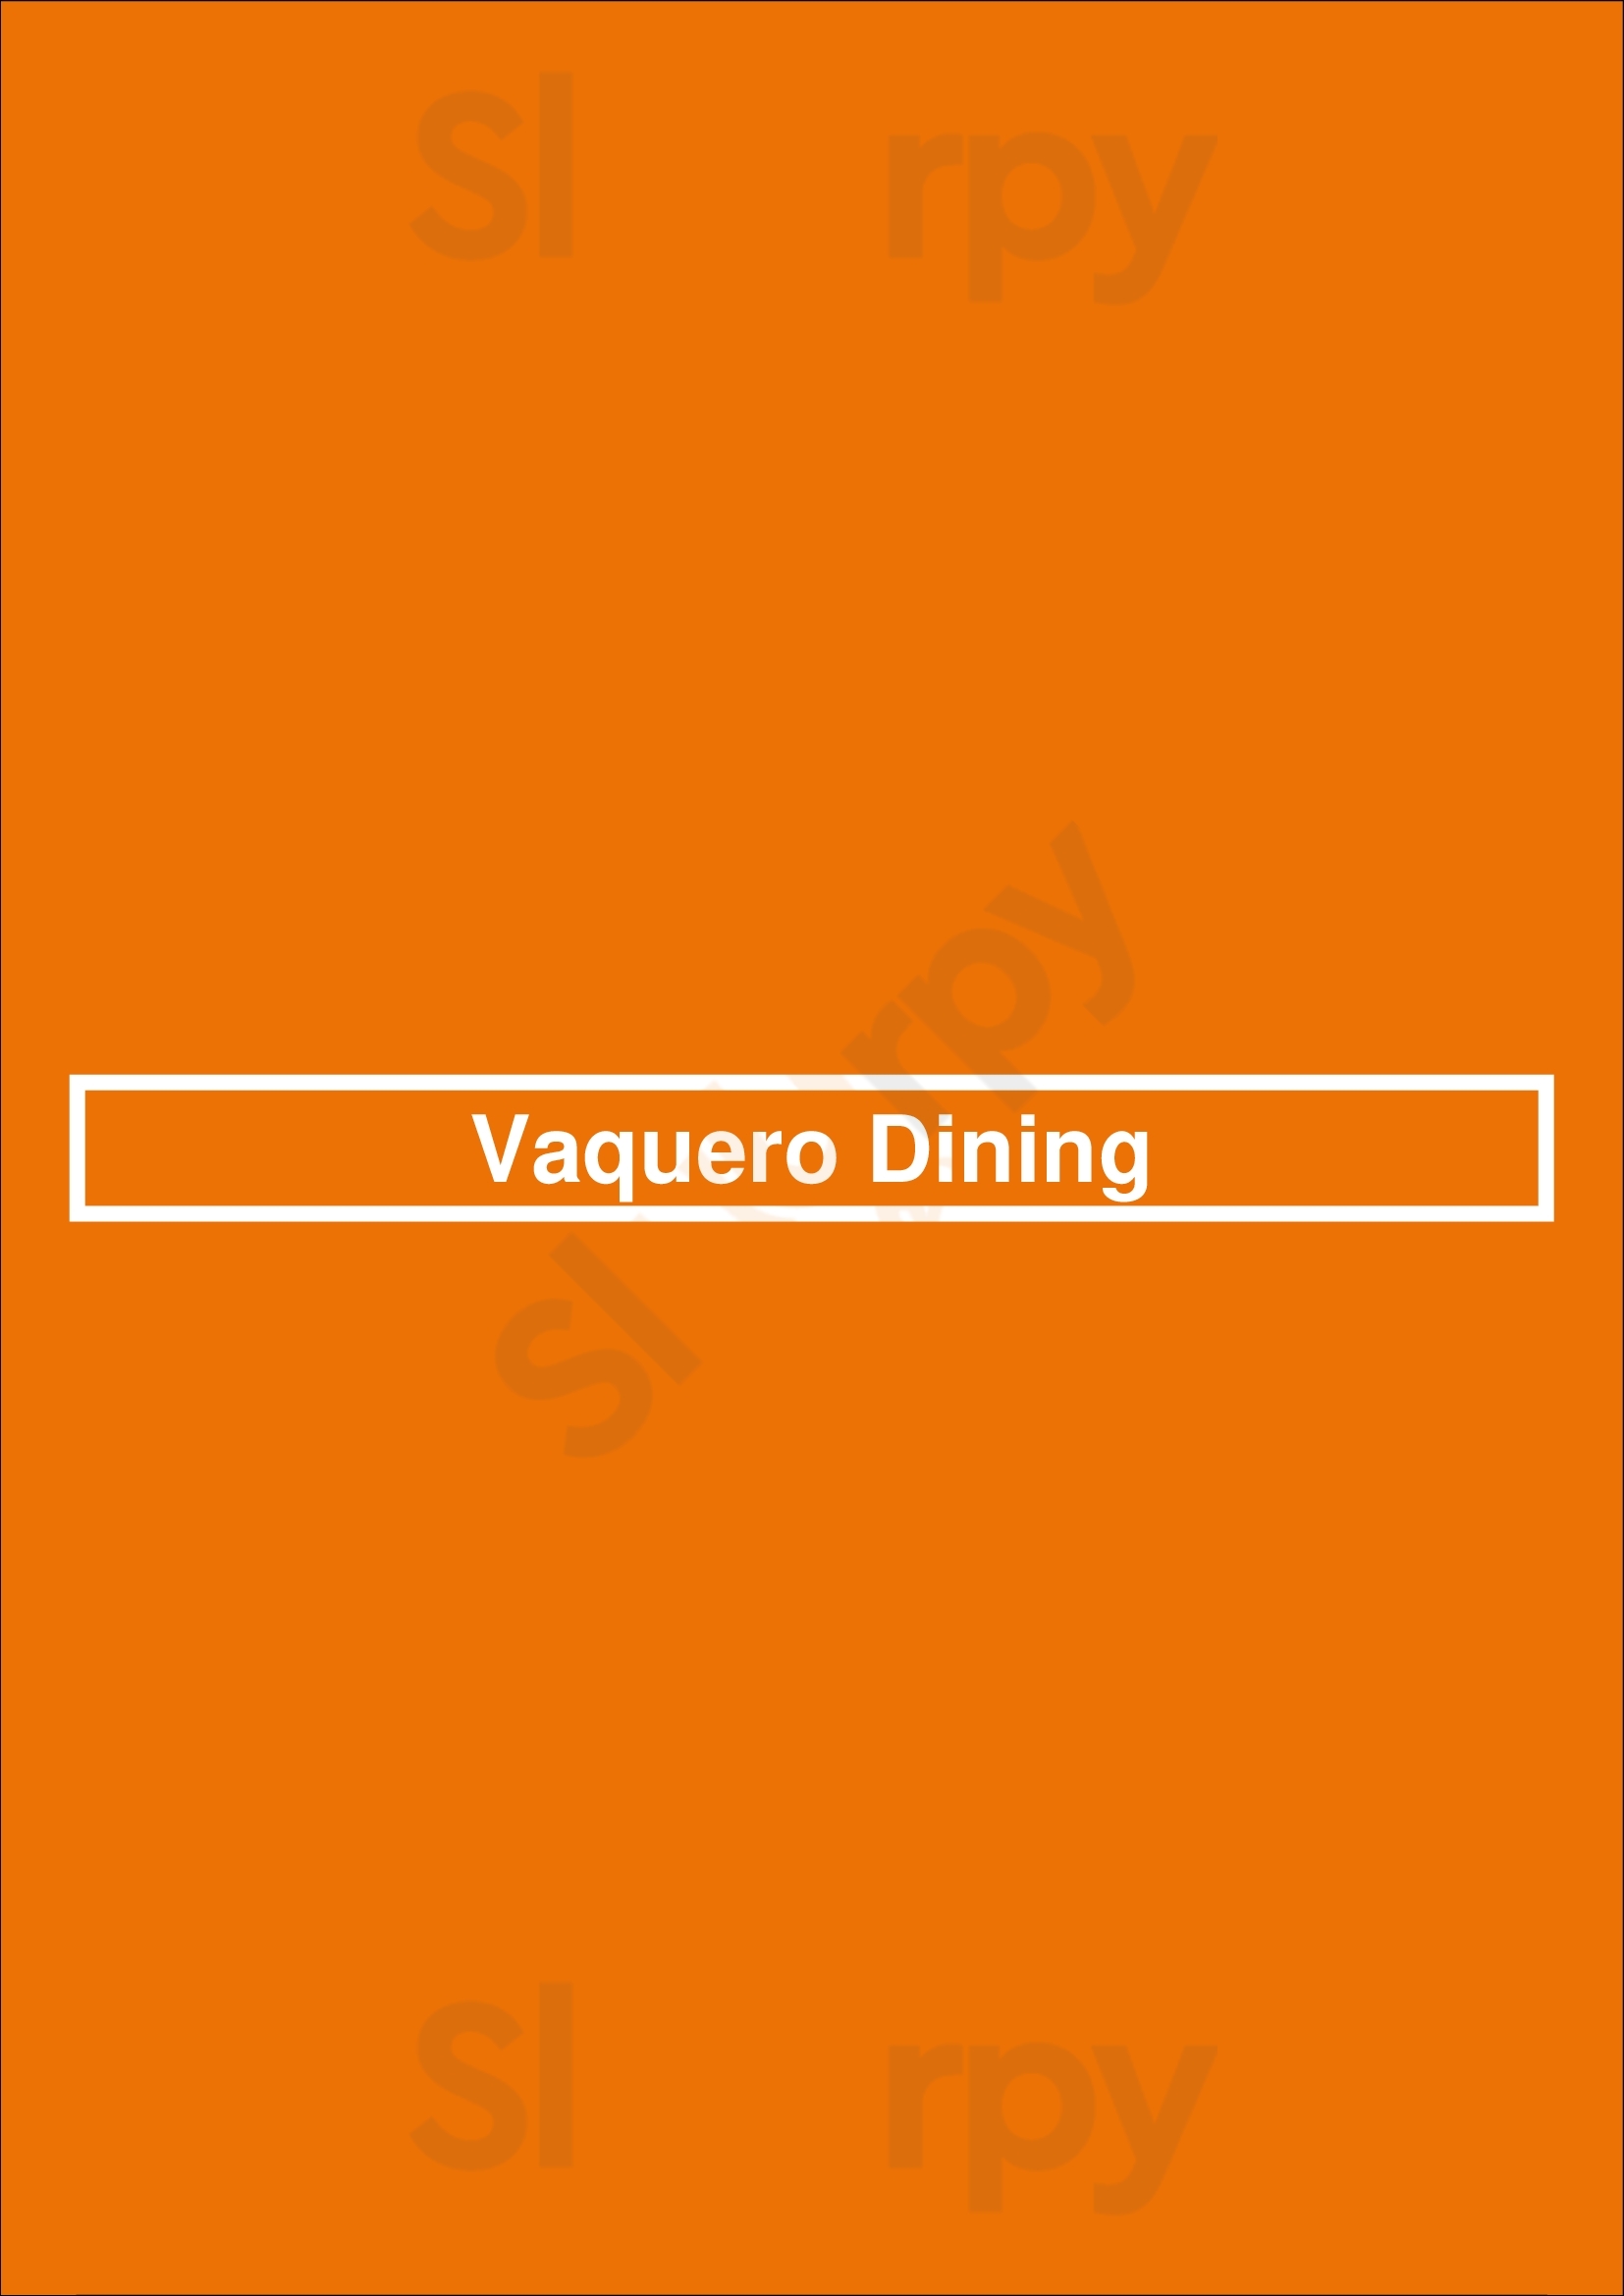 Vaquero Dining Brisbane Menu - 1